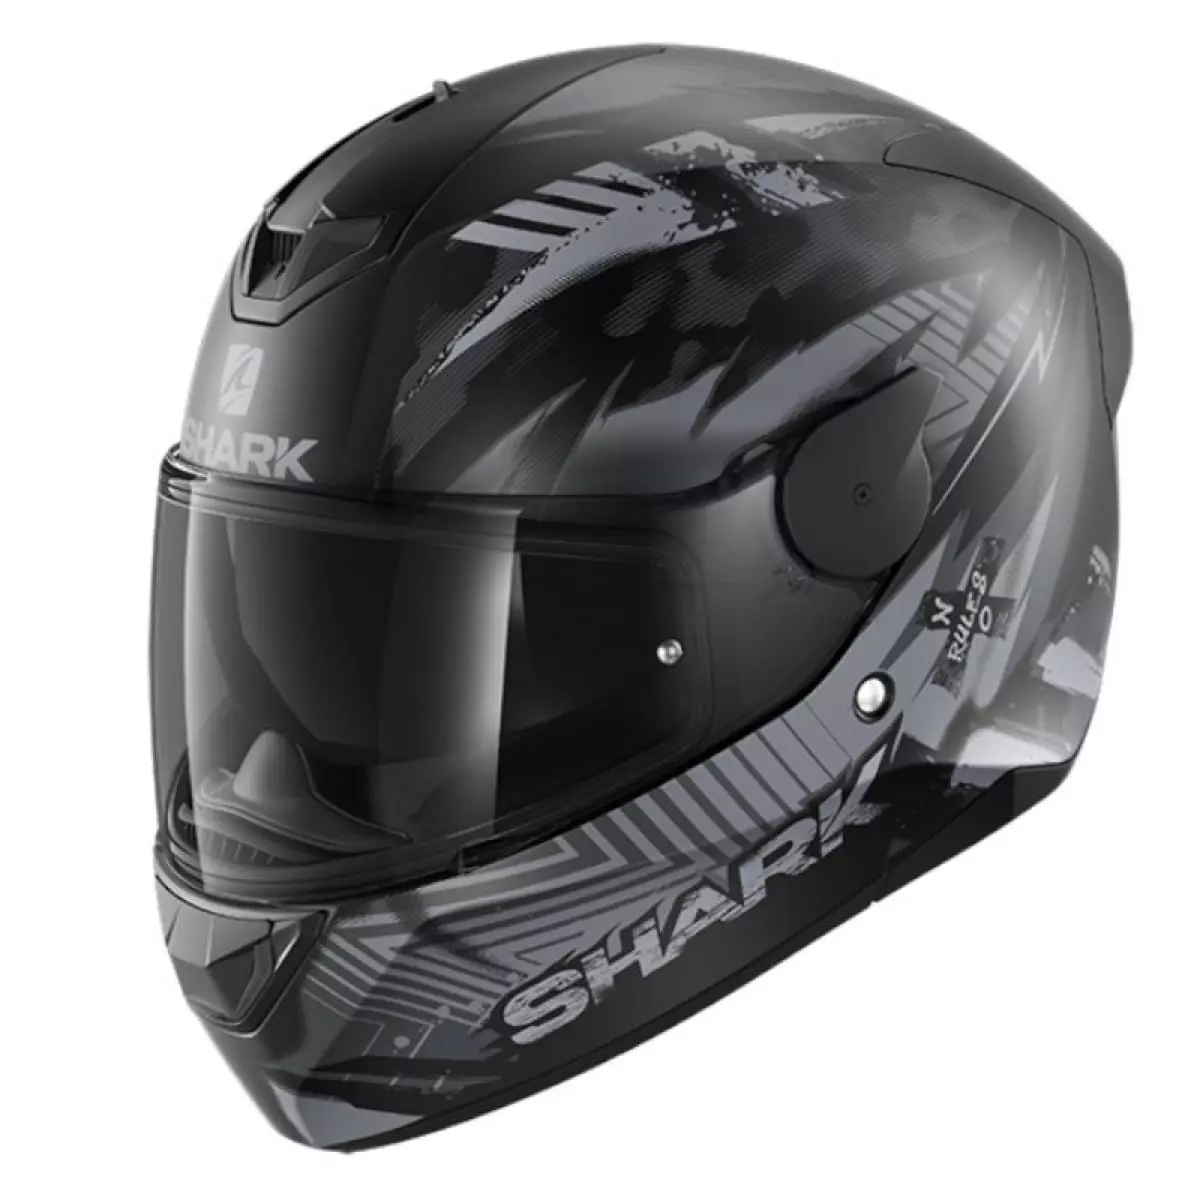 Shark D-Skwal microth Mat casque intégral Nouveau Prix Recommandé 219,95 € taille M de bikerworld 